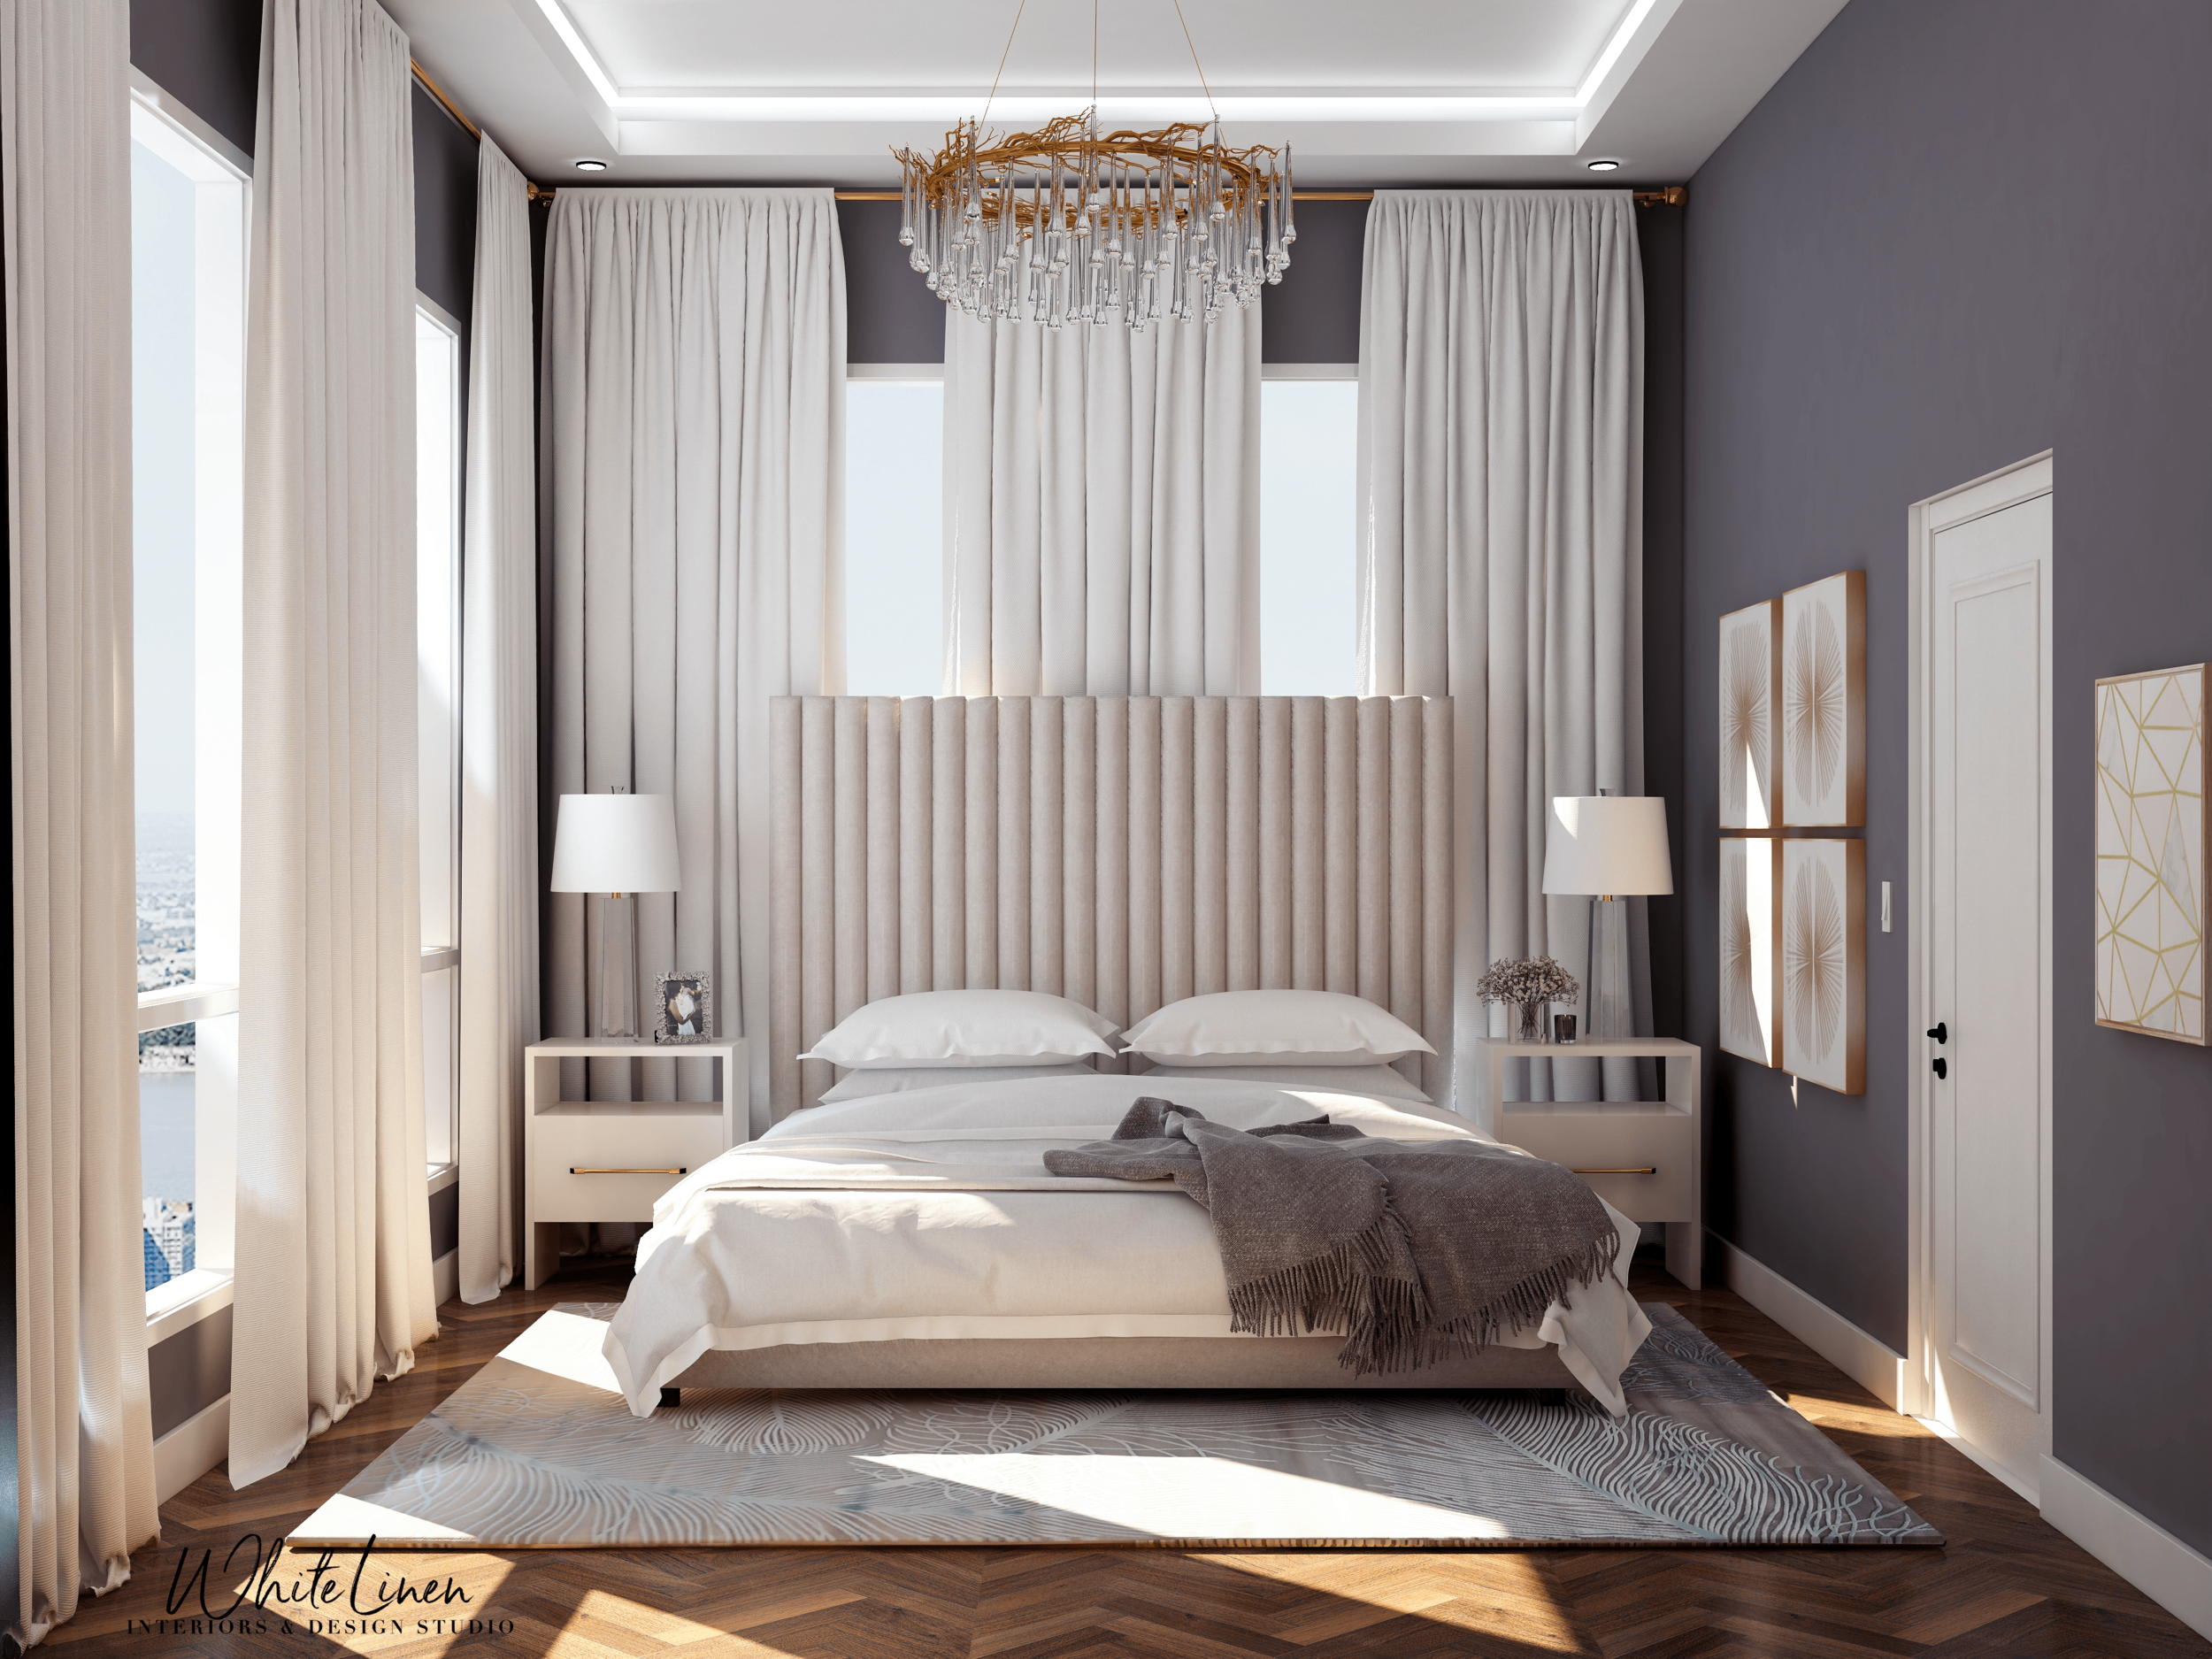 Bedroom Design 